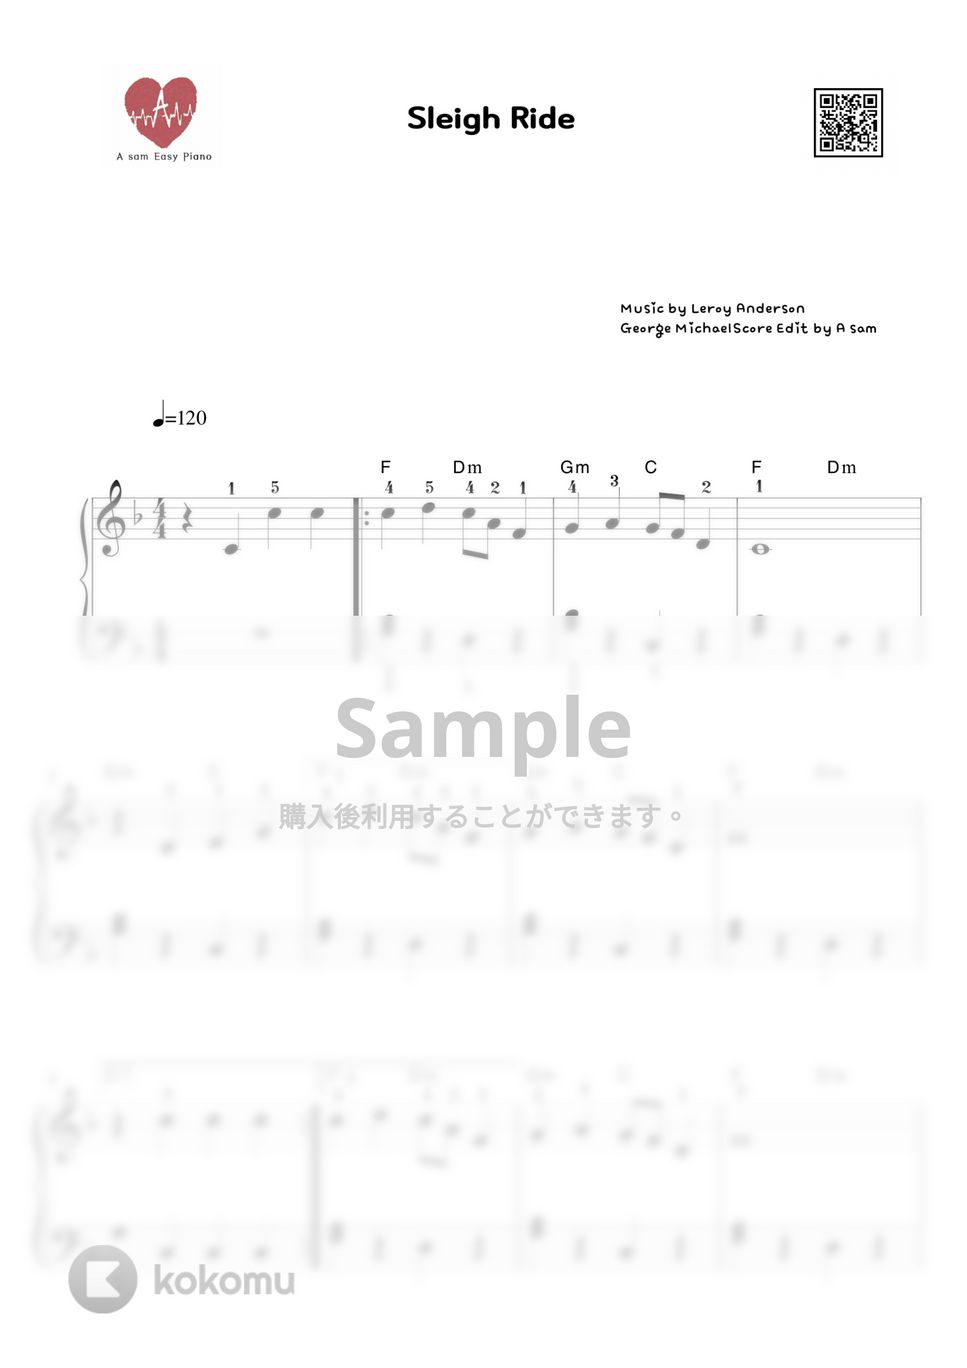 Leroy Anderson - Sleigh Ride(そりすべり) (中級 / 伴奏音源付き) by A-sam